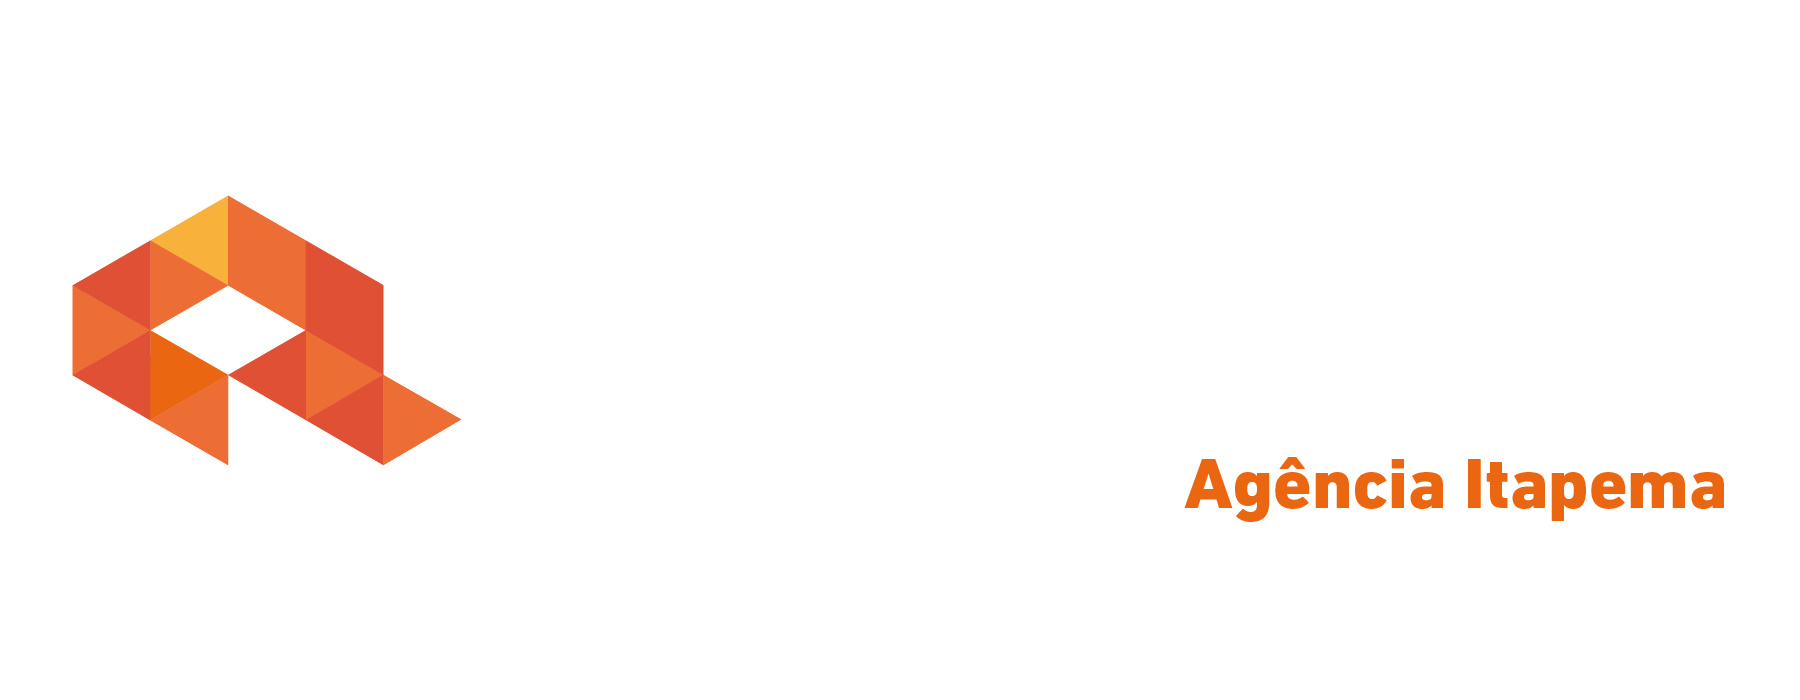 Logo crédito real Crédito Real Itapema